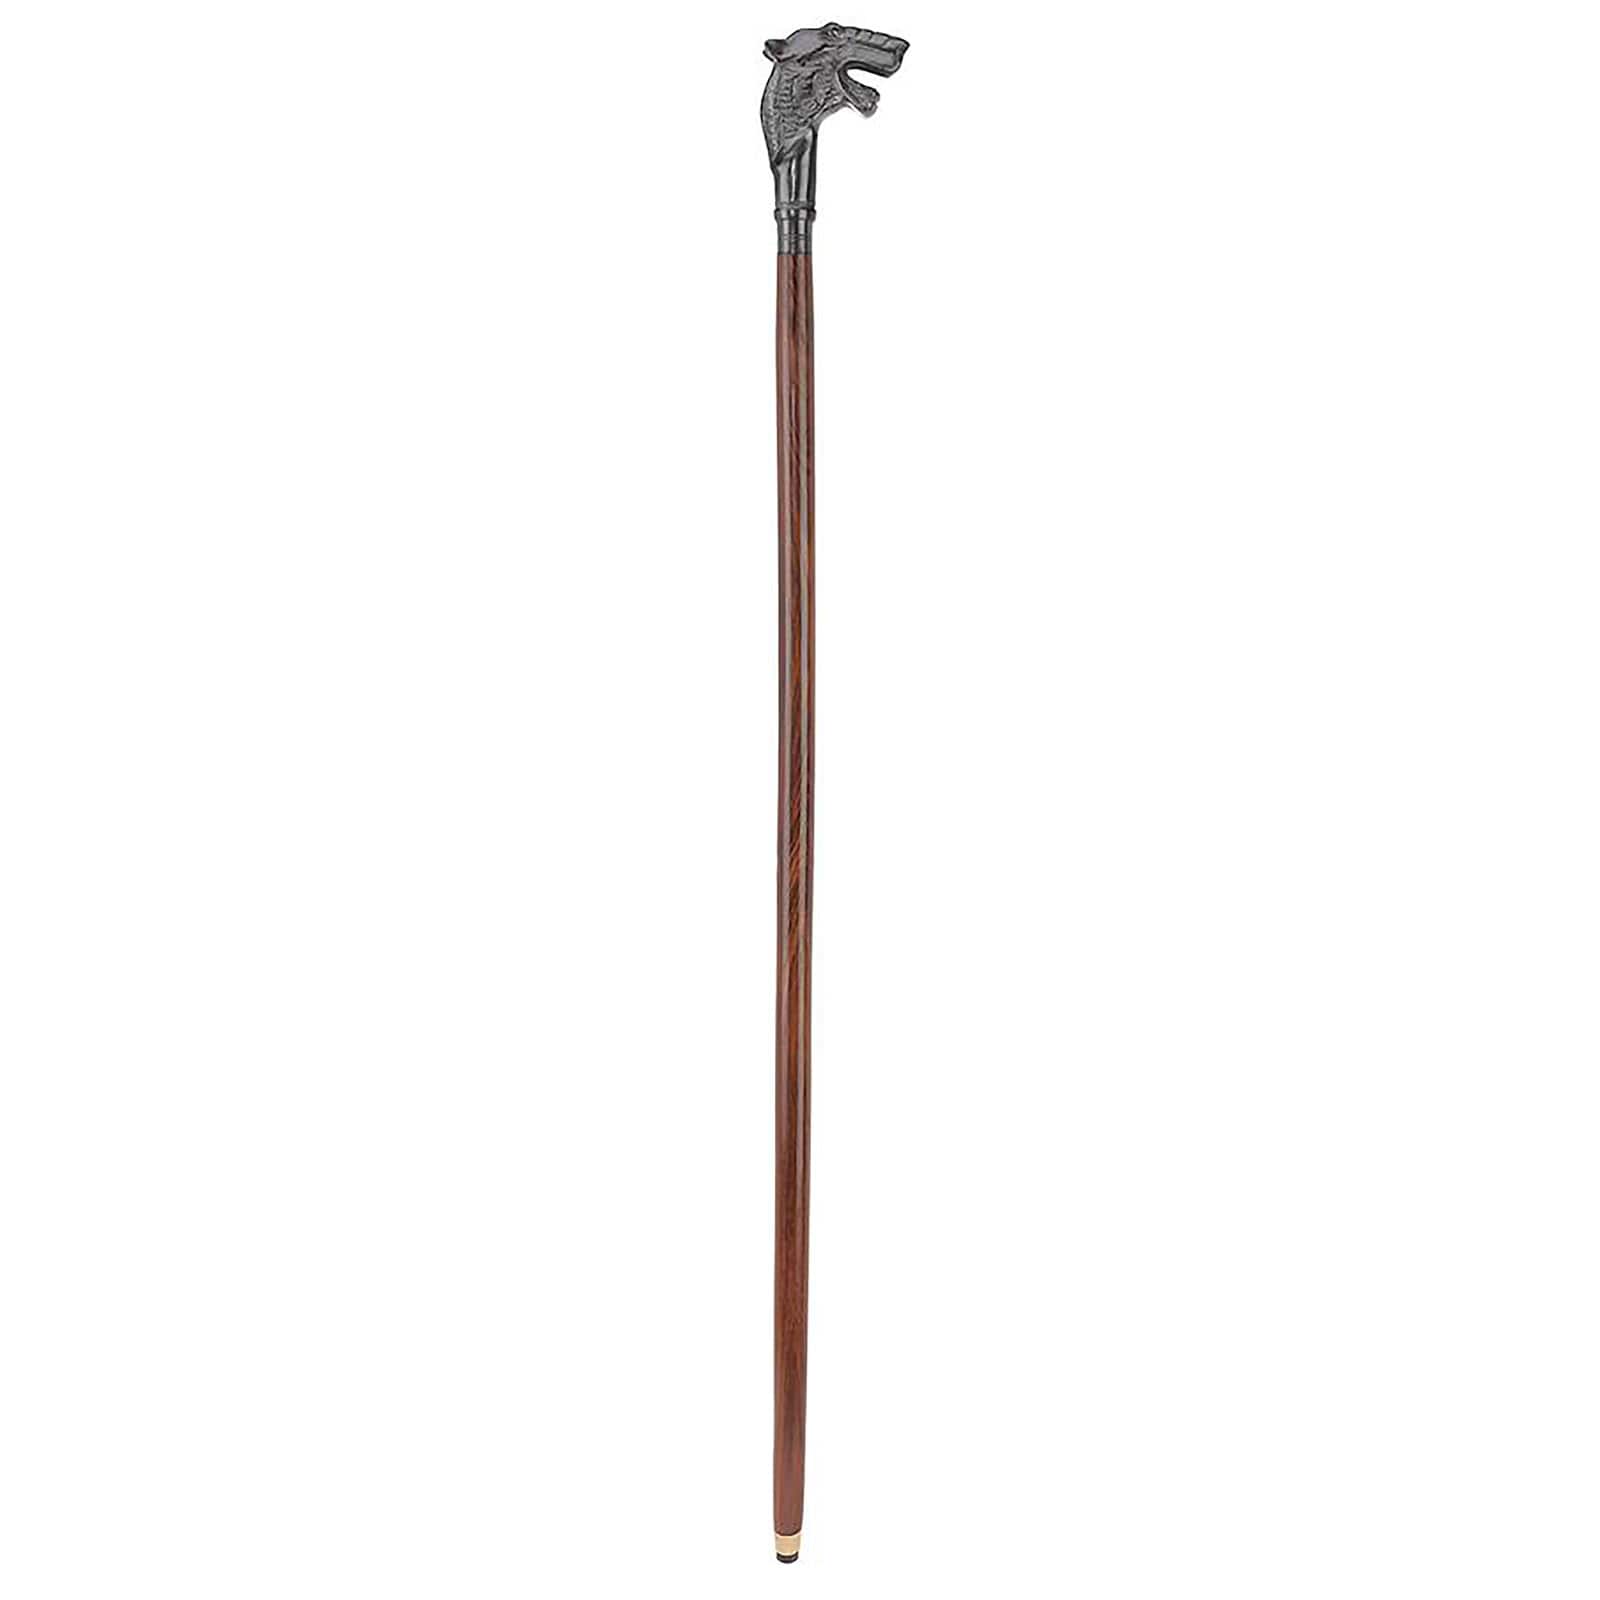 Design Toscano Hound of the Baskervilles Solid Hardwood Walking Stick